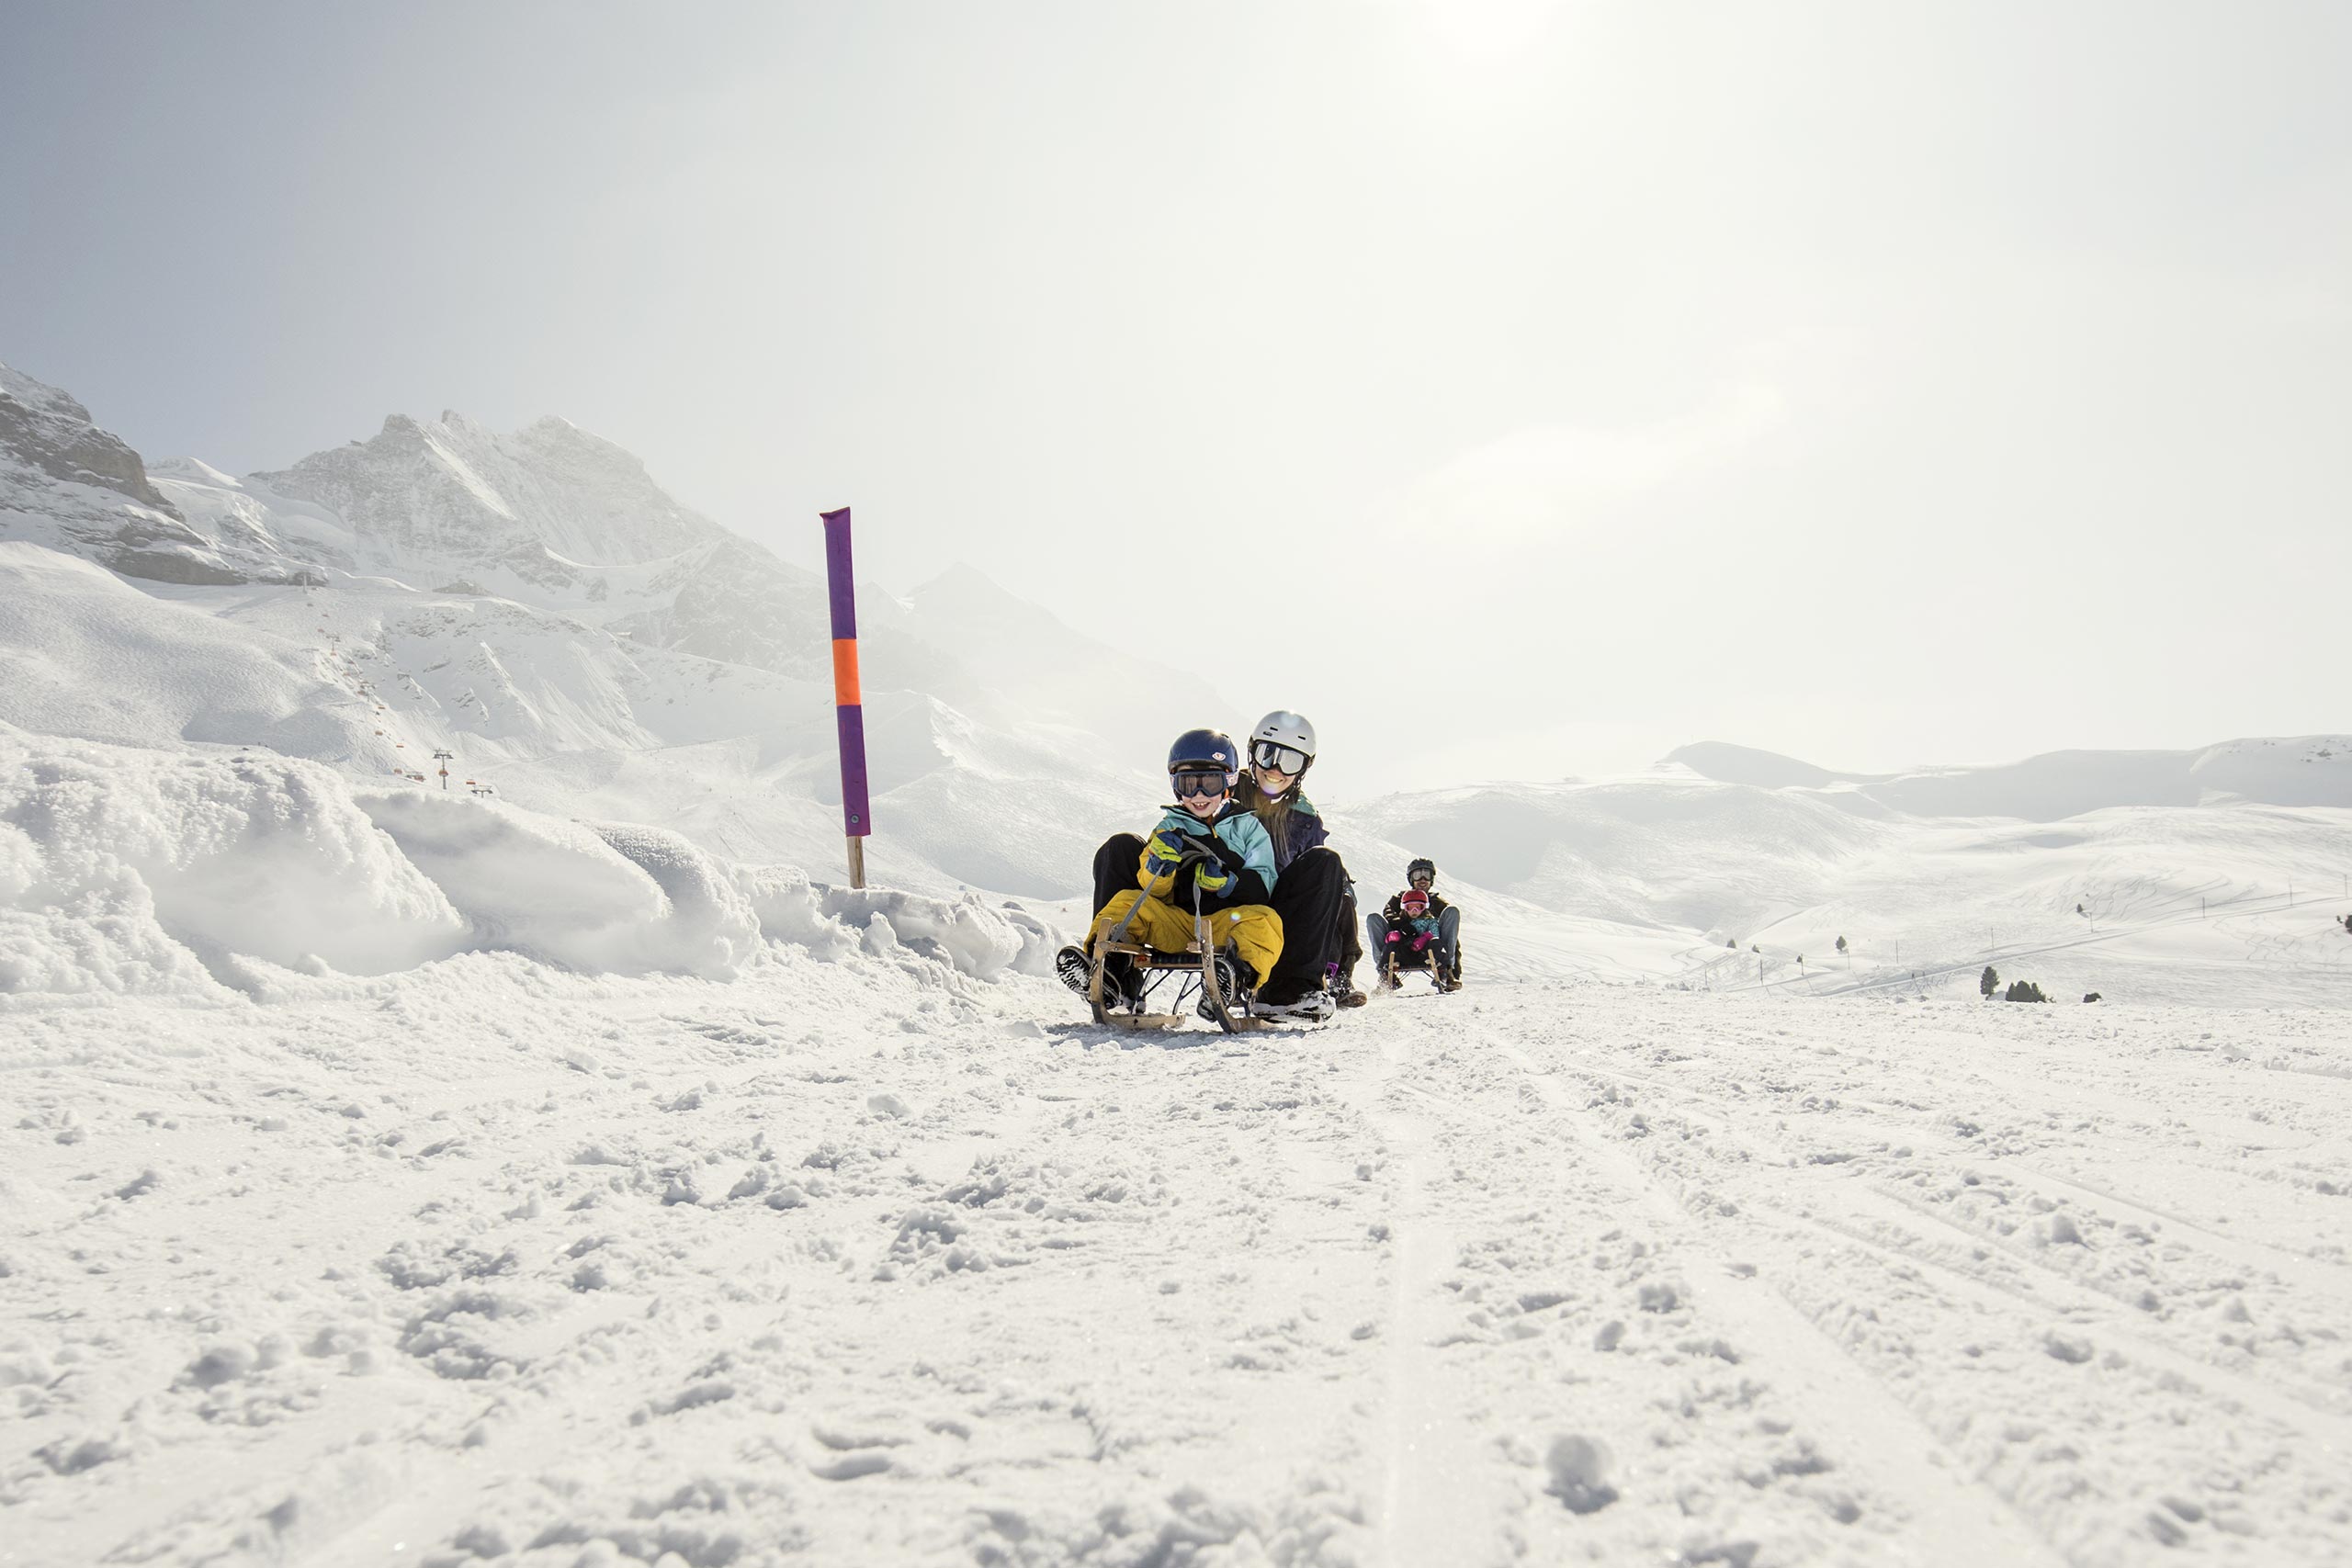 jungfrau-ski-region-schlitteln-winter-schnee.jpg